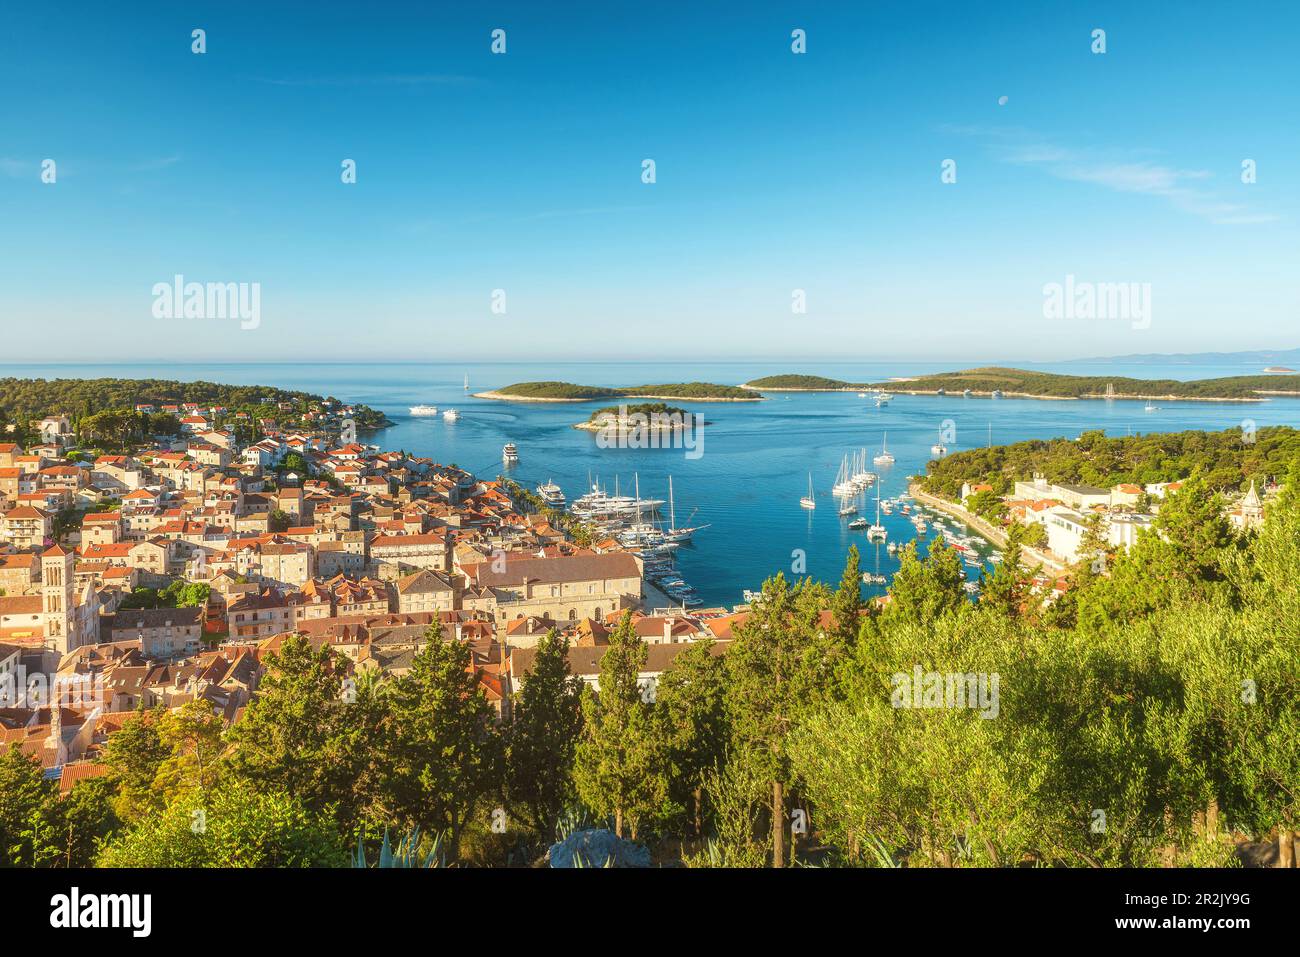 Vue aérienne de la vieille ville de Hvar sur l'île de Hvar, Dalmatie, Croatie. Port de la vieille ville avec yachts et bateaux. Station de vacances d'été Banque D'Images